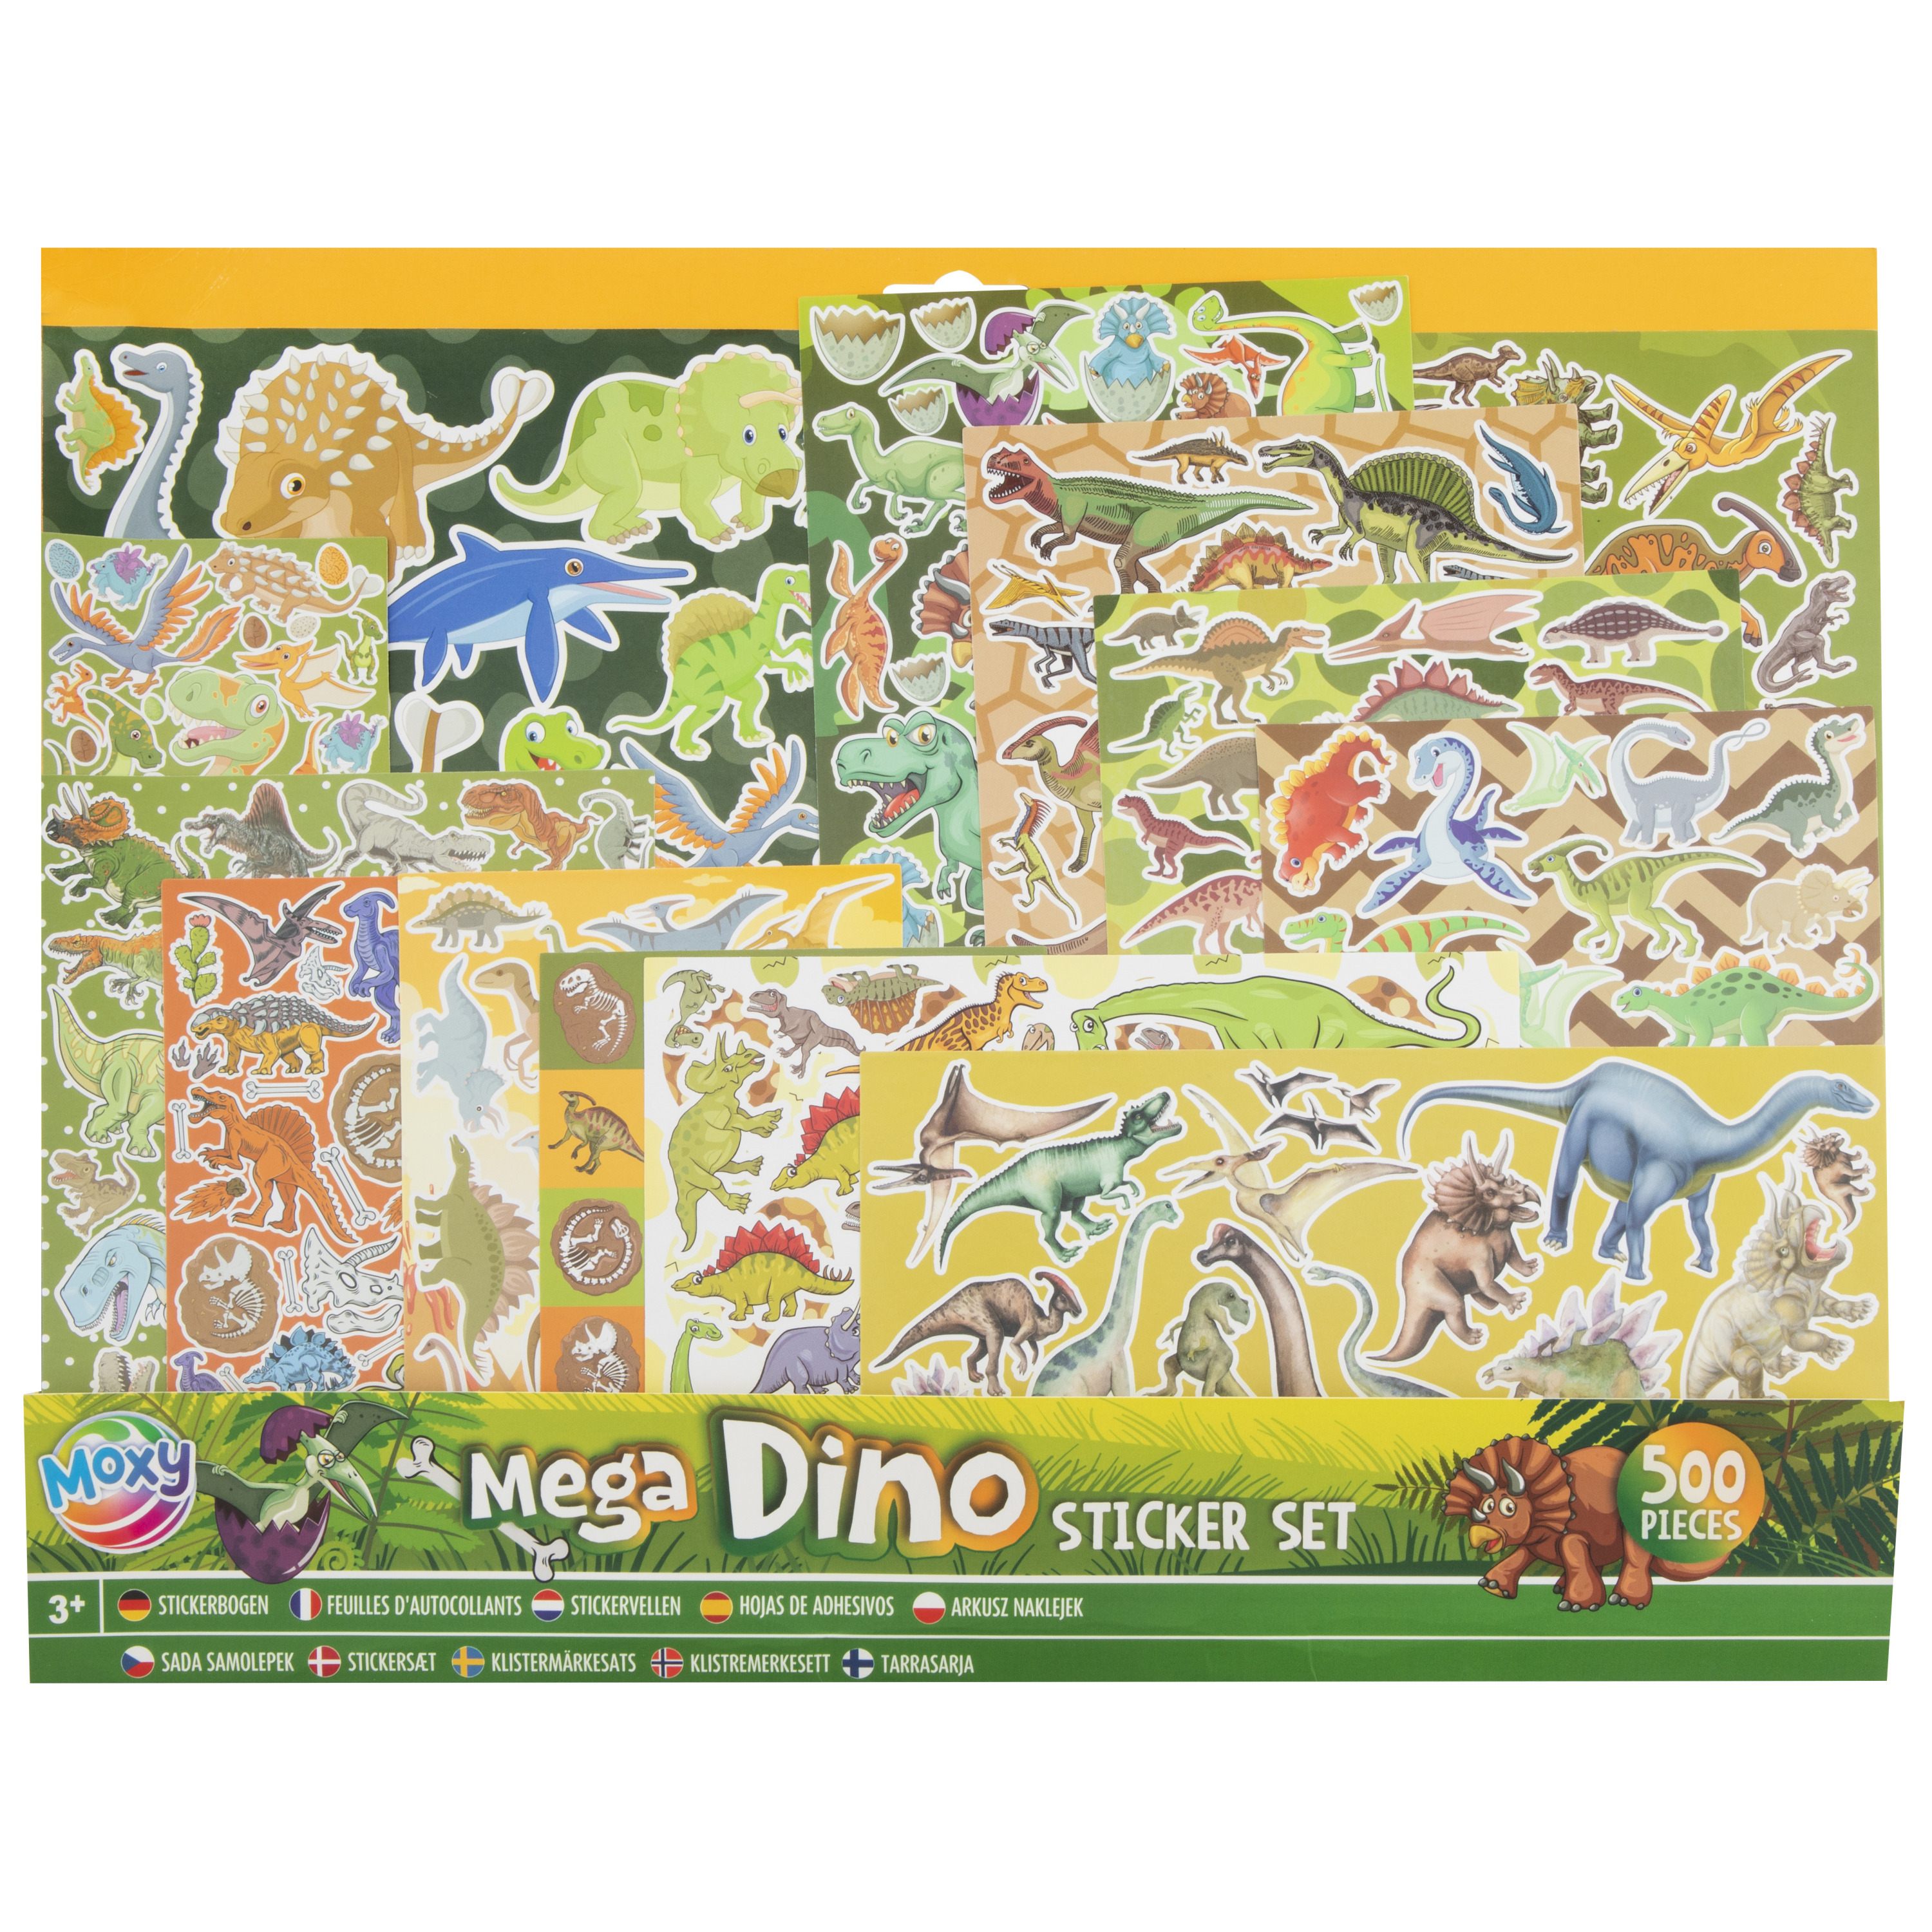 Dinosaurus stickers set voor kinderen 500 stuks Dino artikelen